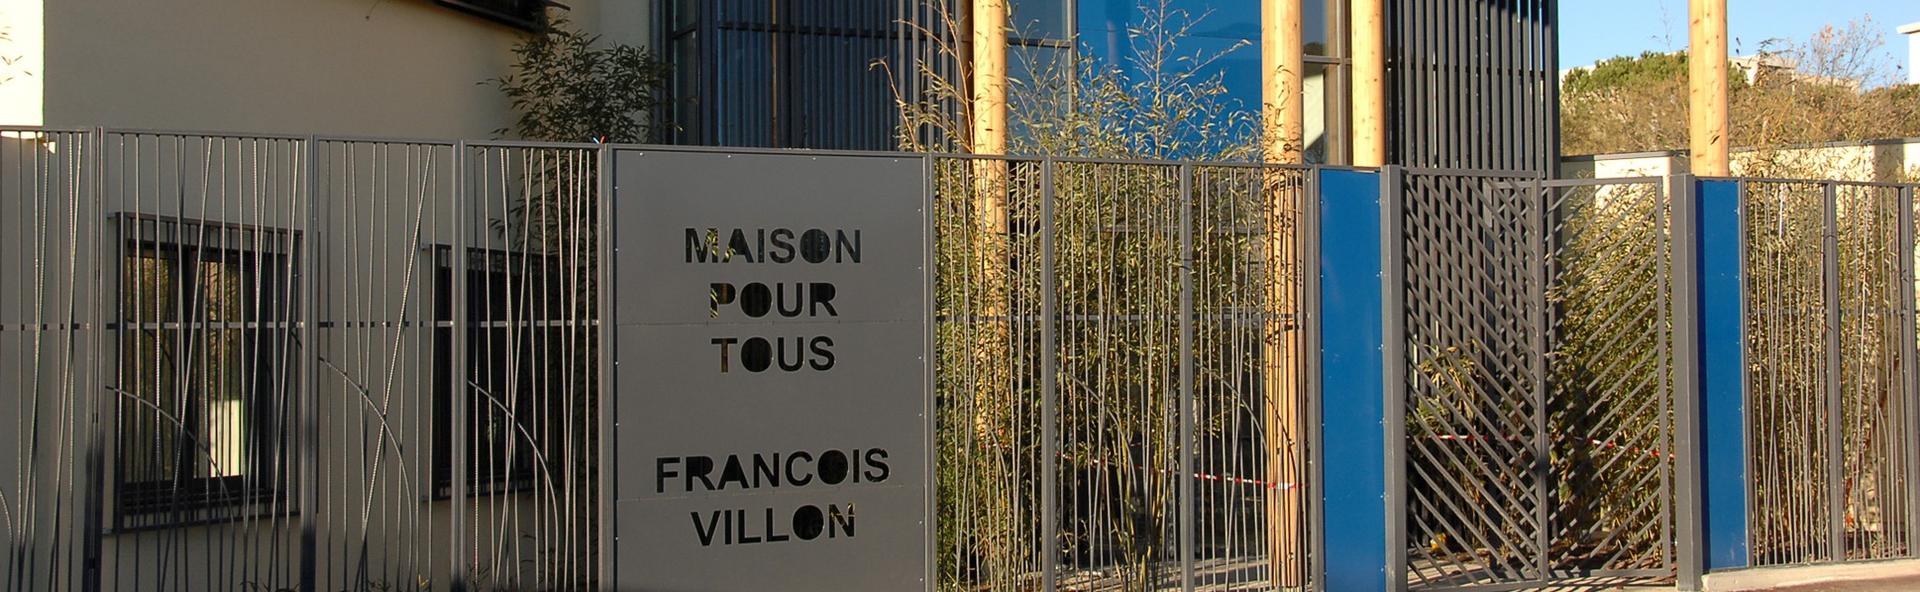 Maison pour tous François Villon - Ville de Montpellier